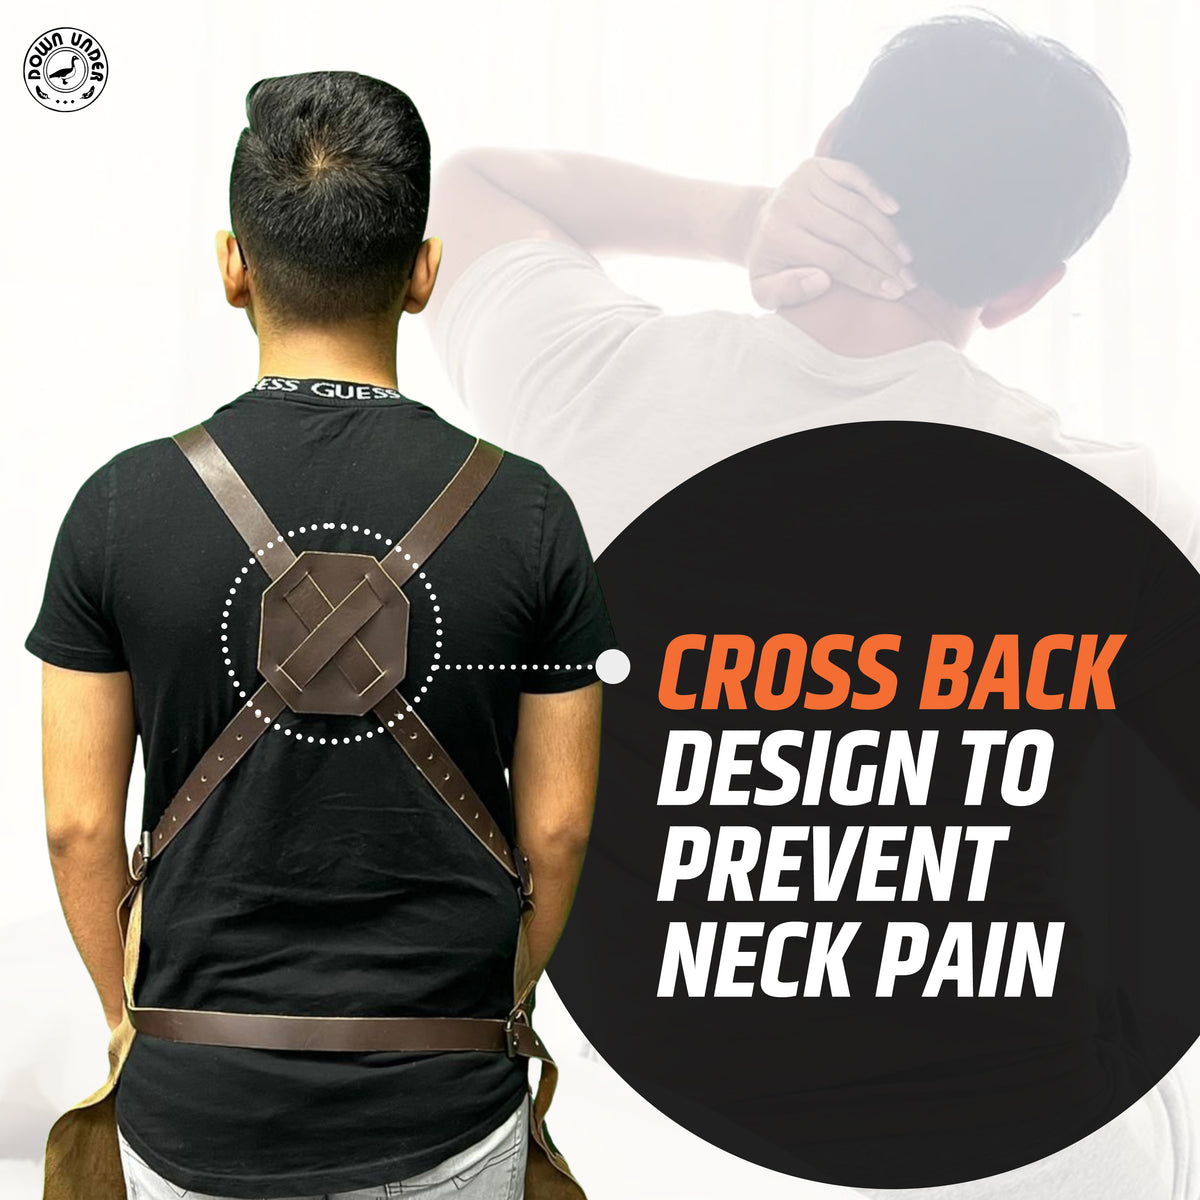 prevents neck pain